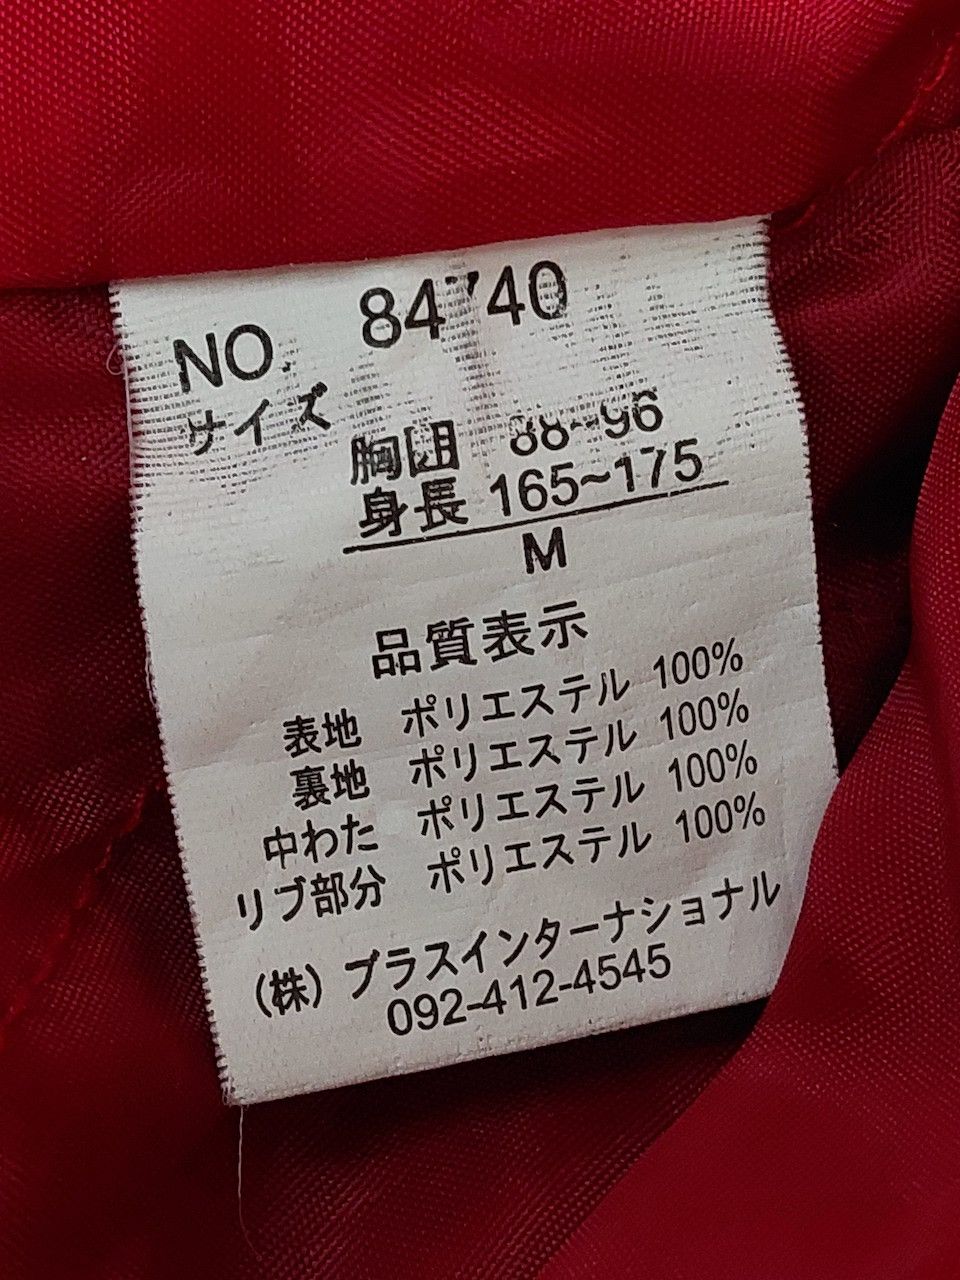 Vintage Sukajan Karakuri Jacket Koi Fish Embroidery Japan - 12